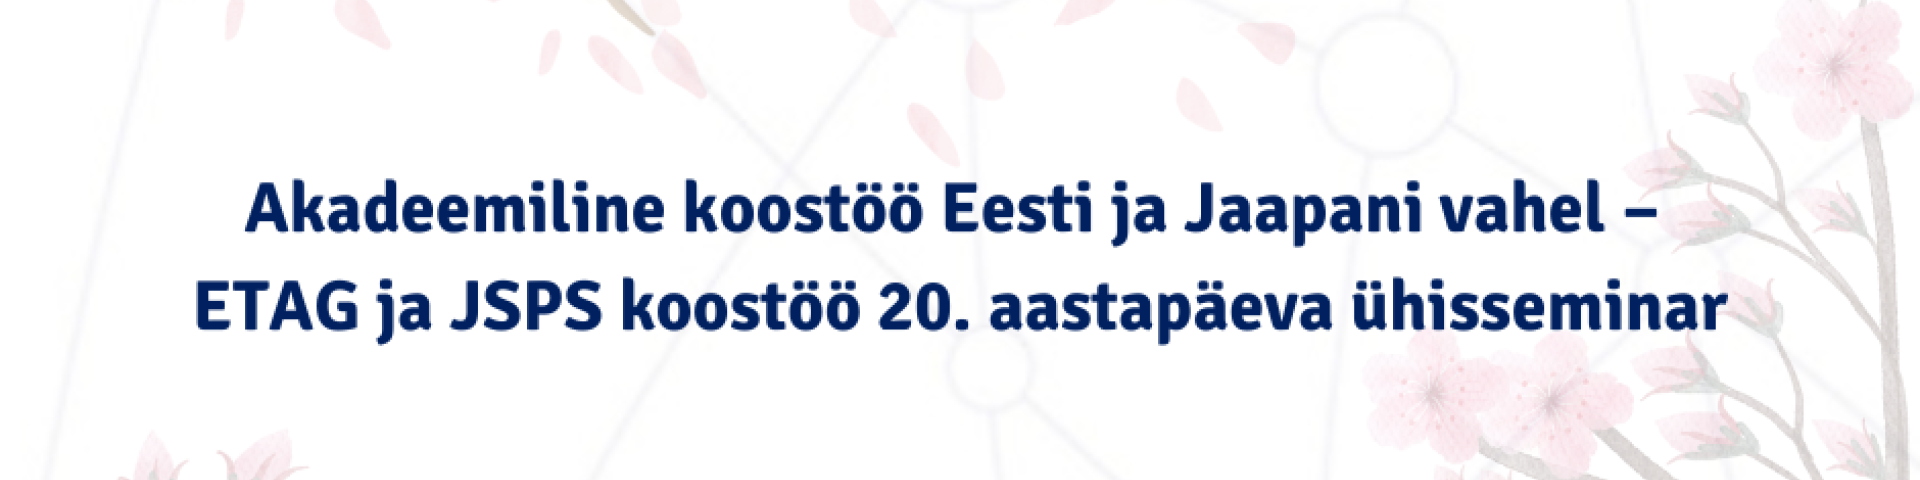 Akadeemiline koostöö Eesti ja Jaapani vahel – ETAG ja JSPS koostöö 20. aastapäeva ühisseminar